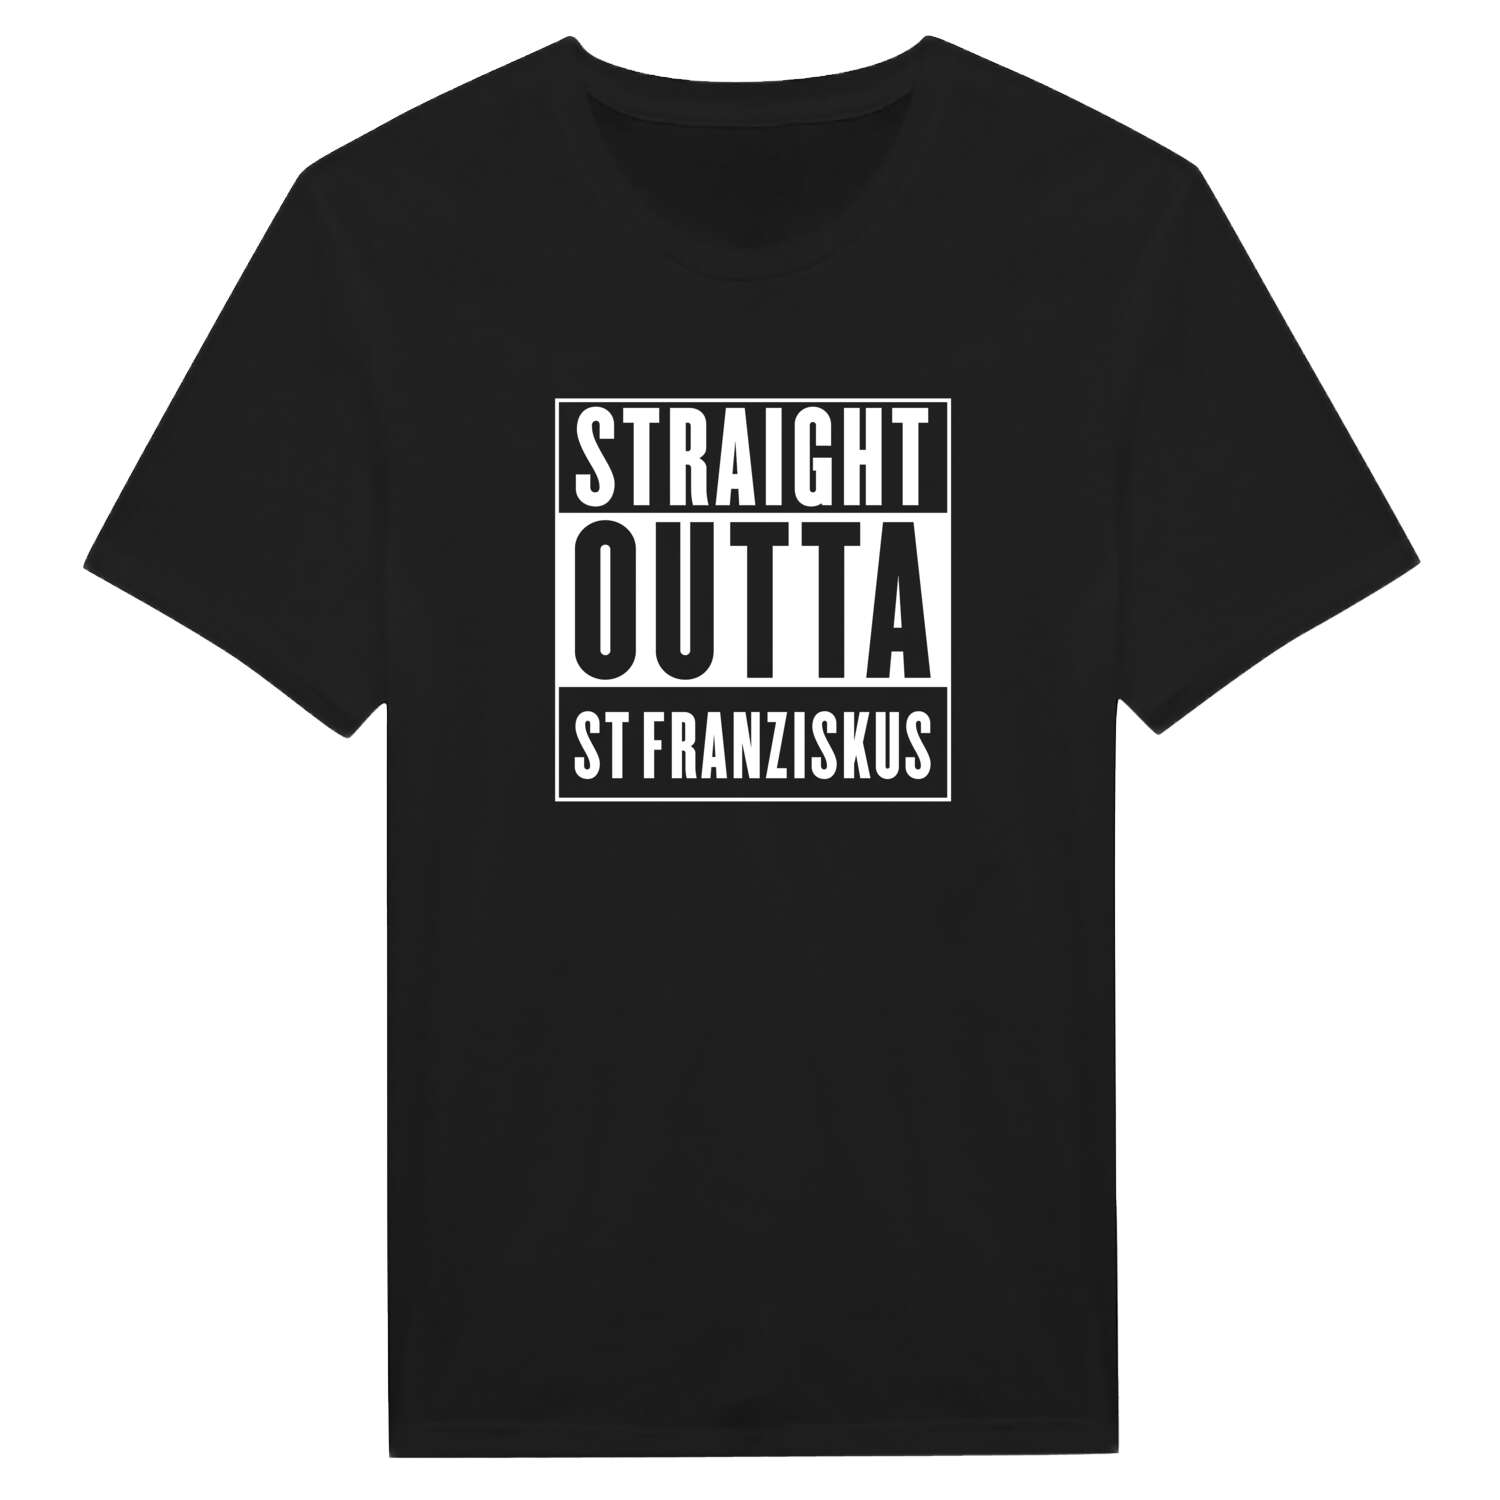 St Franziskus T-Shirt »Straight Outta«